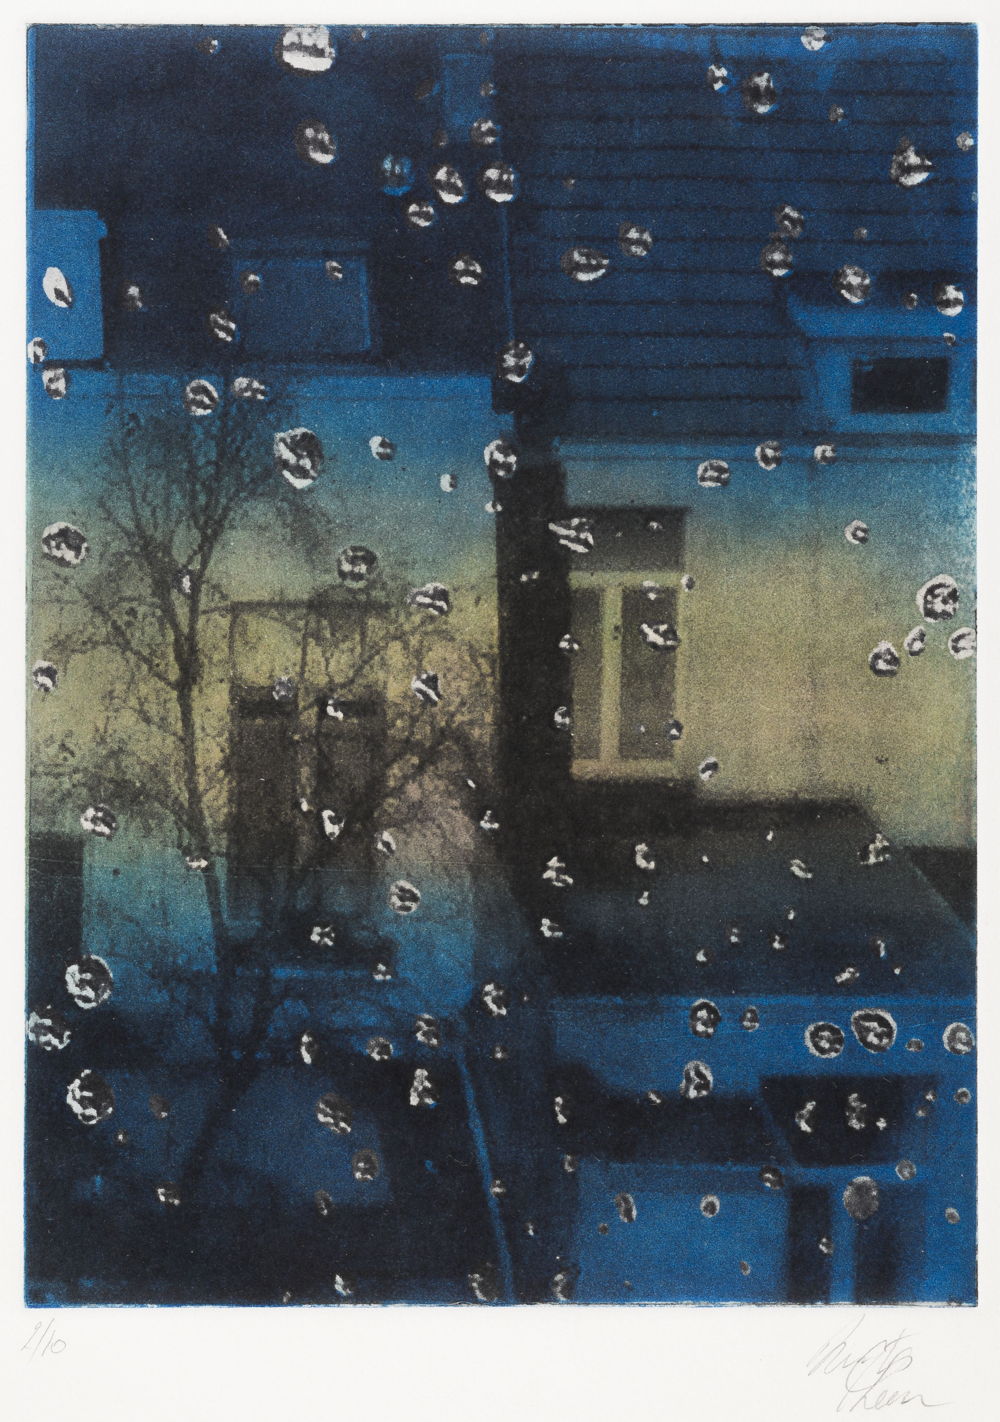 Leen Nuyts, Druppels, Aquatint + polymeerets, 530 x 430 